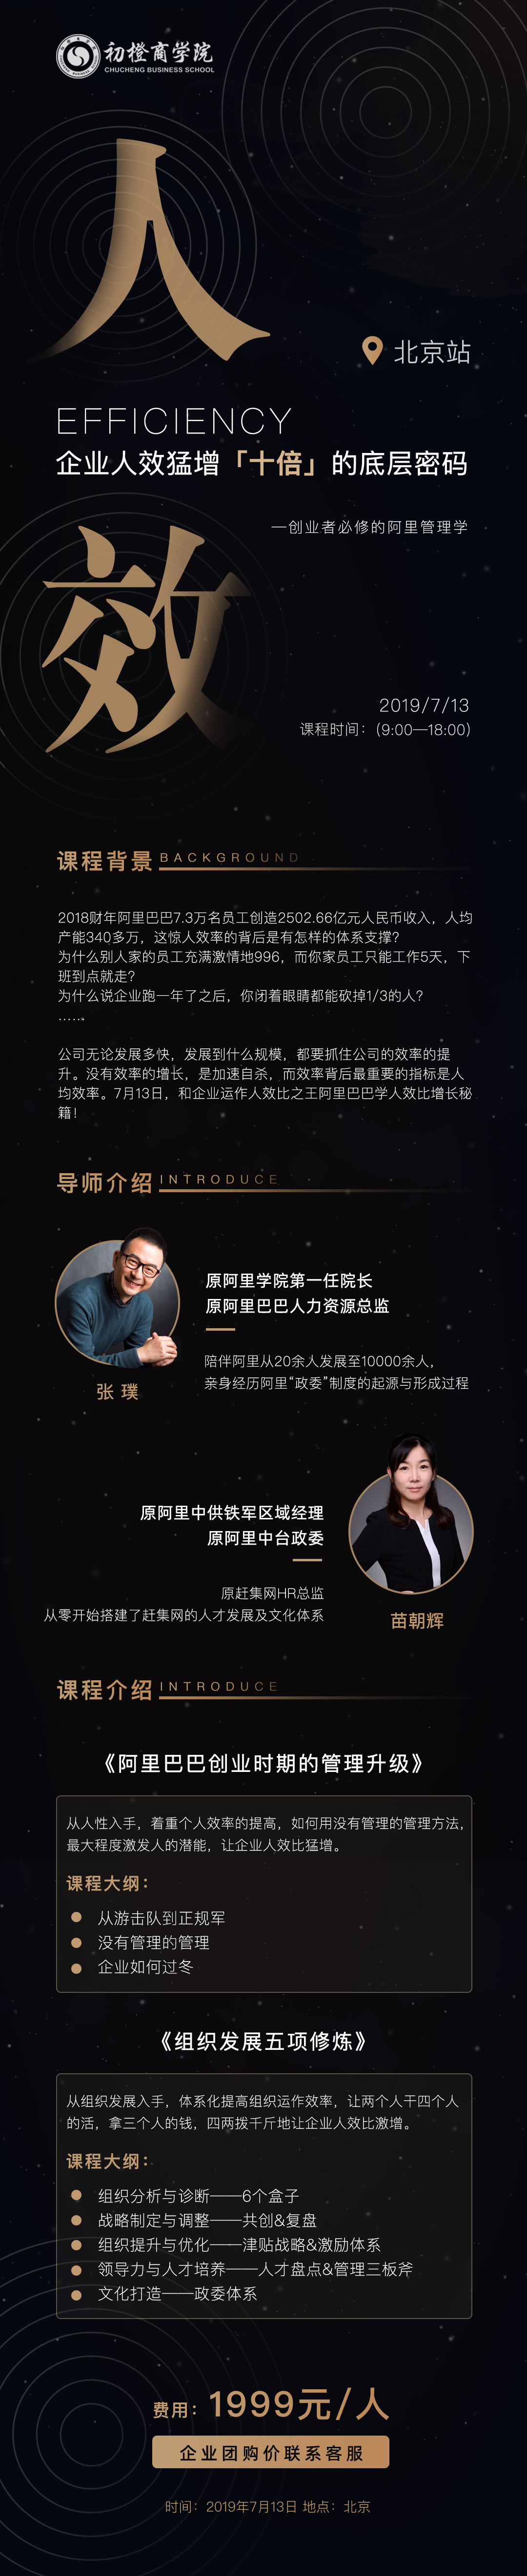 2019阿里巴巴创业时期的管理升级·初橙商学院北京公开课